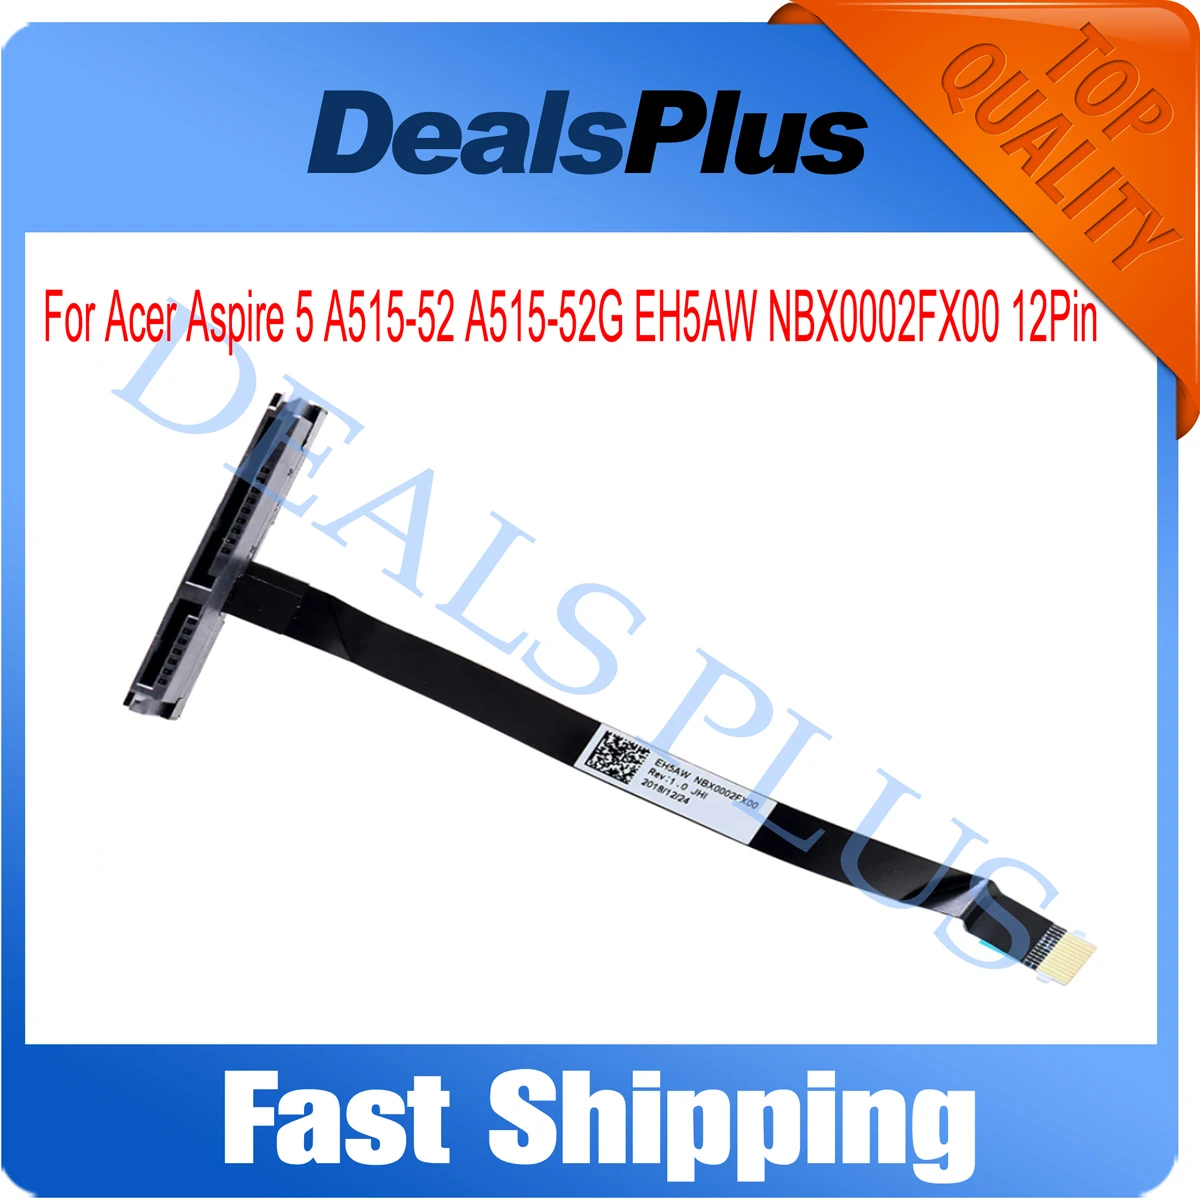 Новый кабель для жесткого диска SATA кронштейн Acer Aspire 5 A515-52 EH5AW NBX0002FX00 12Pin - купить по